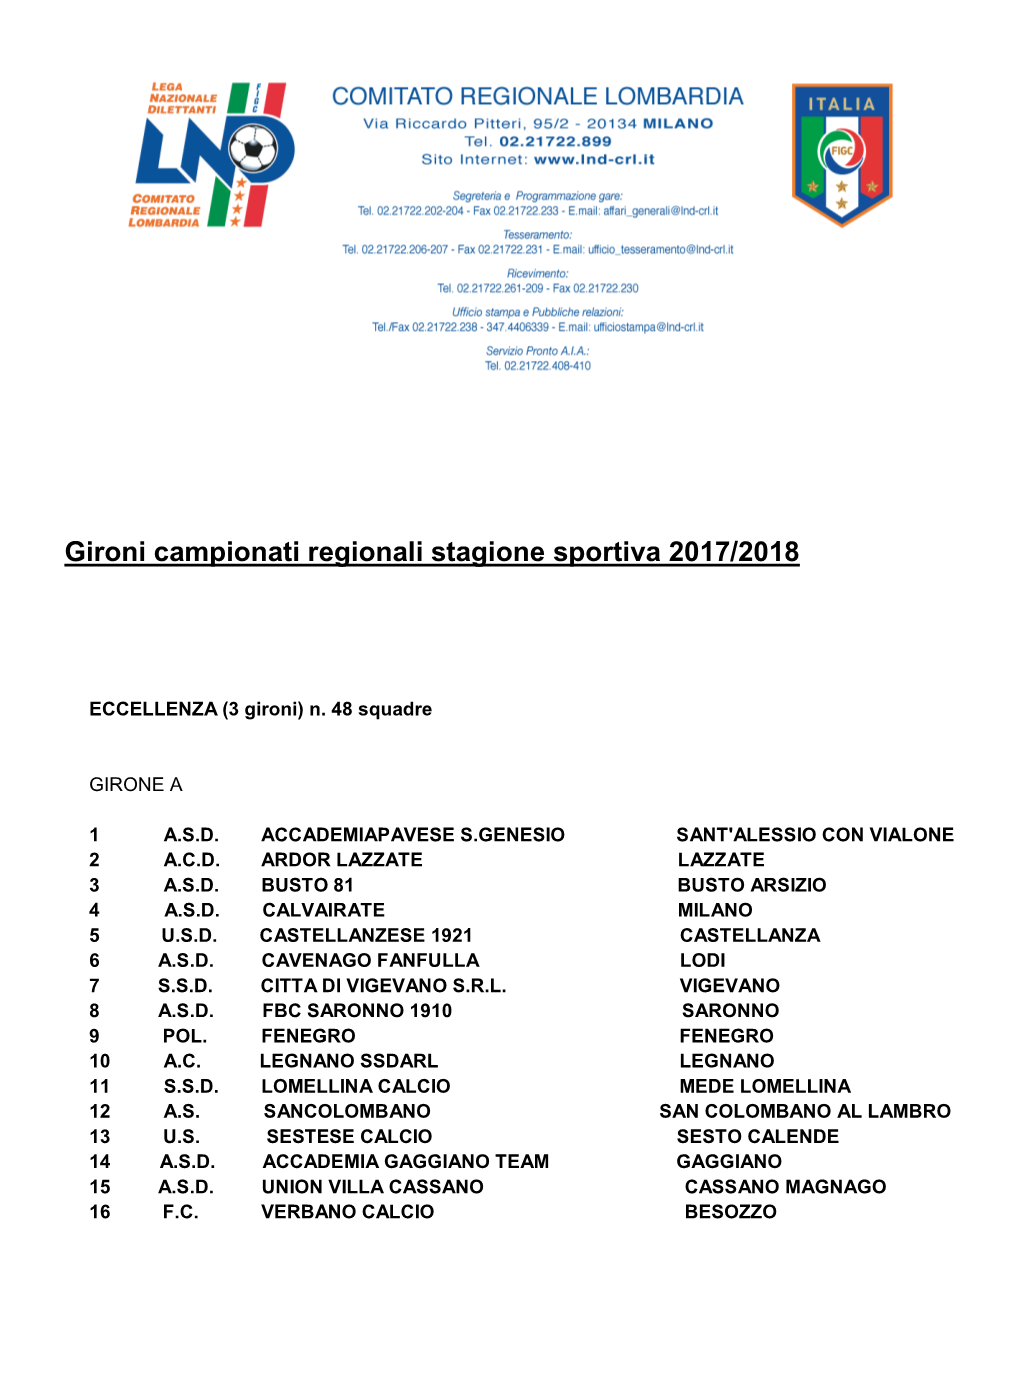 Gironi Campionati Regionali Stagione Sportiva 2017/2018